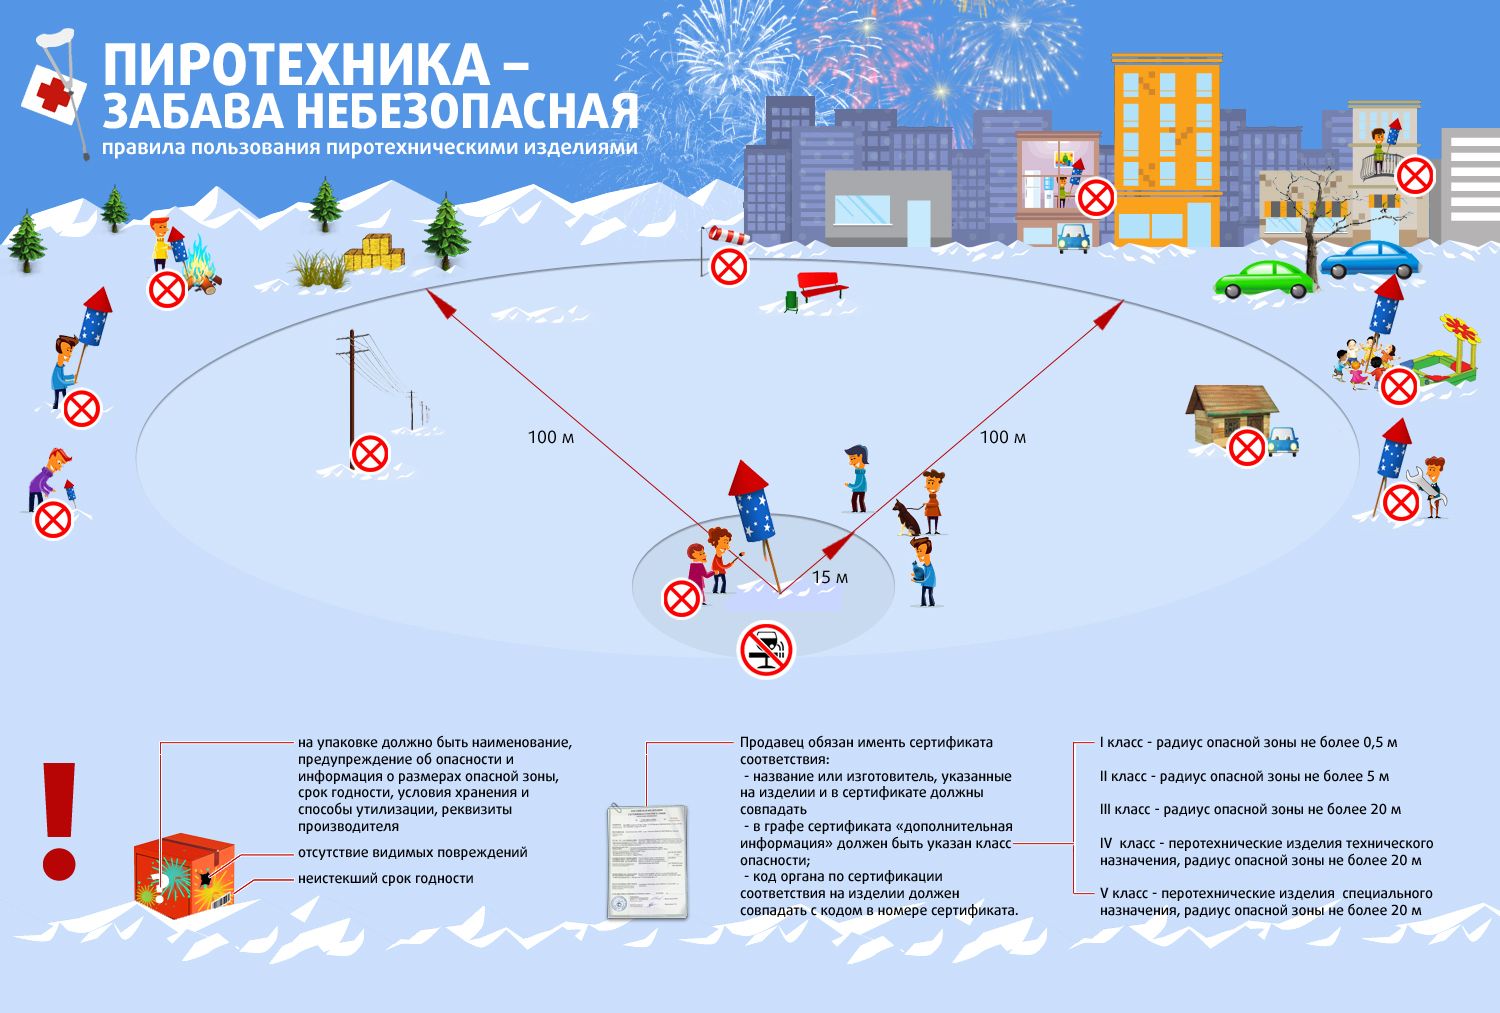 Инструкция о мерах пожарной безопасности при организации и проведении новогодних и рождественских мероприятий с массовым пребыванием людей